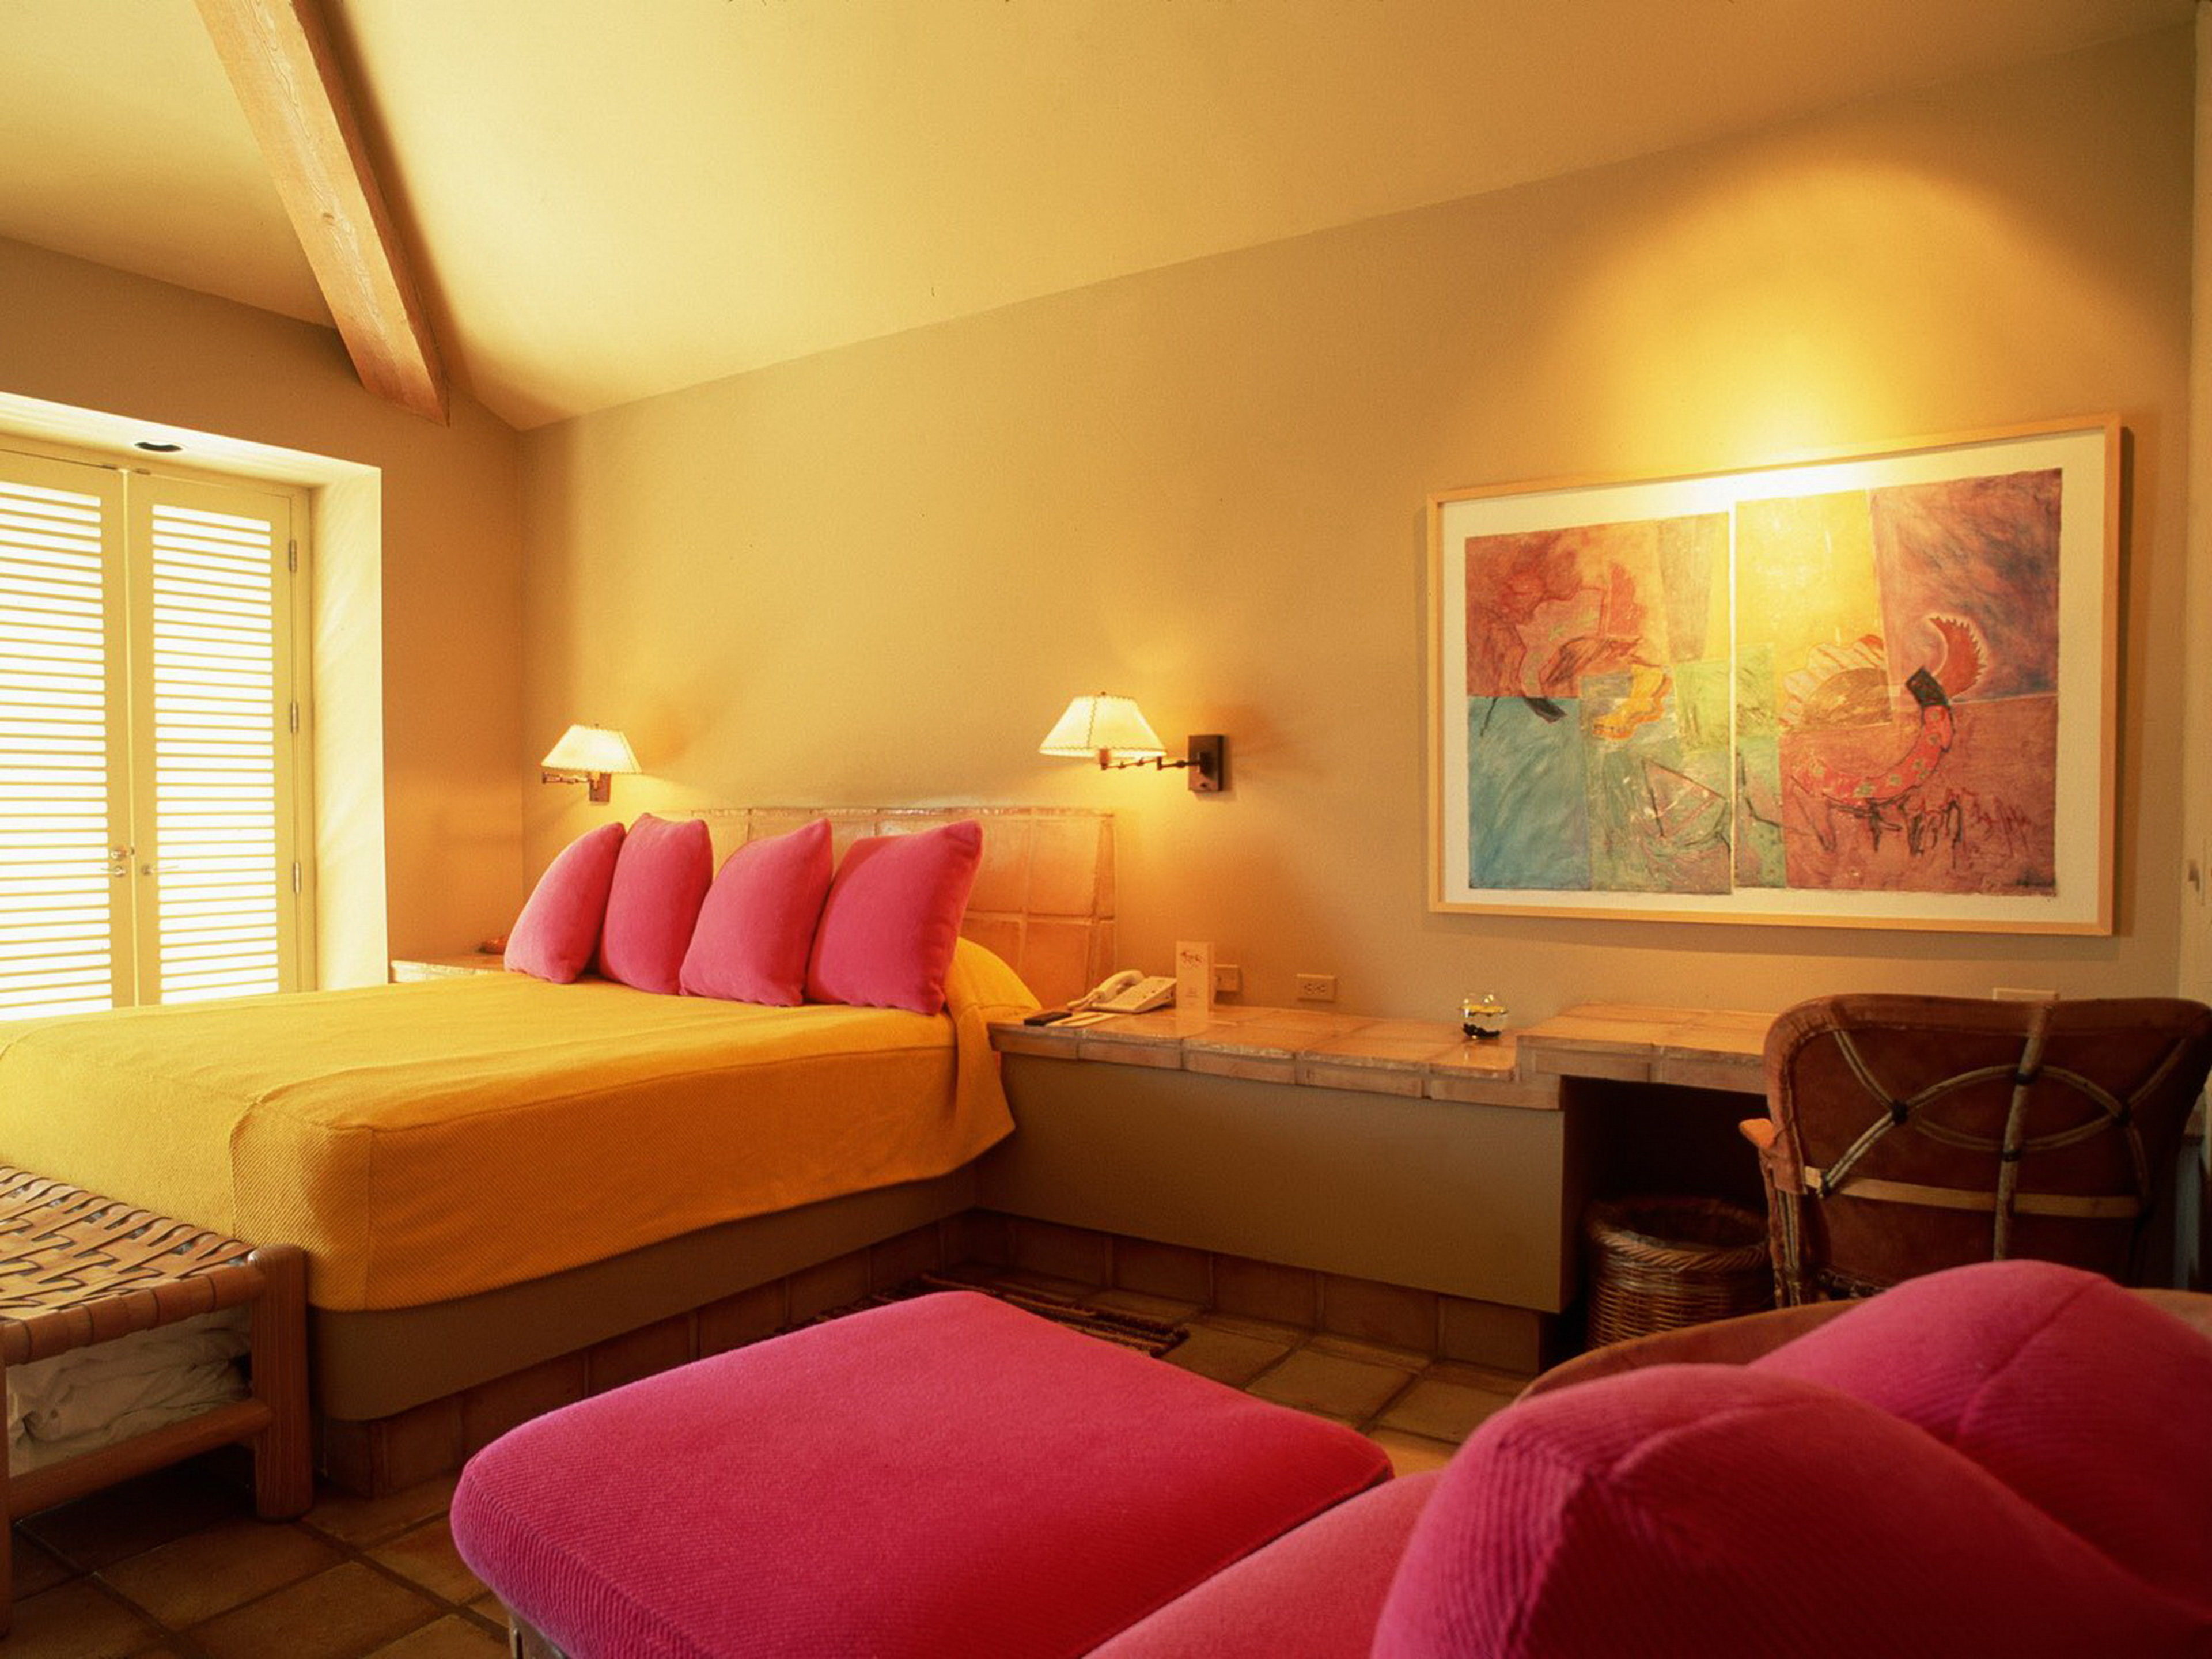 интерьер, спальня, кровать, розовые подушки, желтый фон, картина, скачать, Interior, bedroom, bed, pillow pink, yellow background, picture download